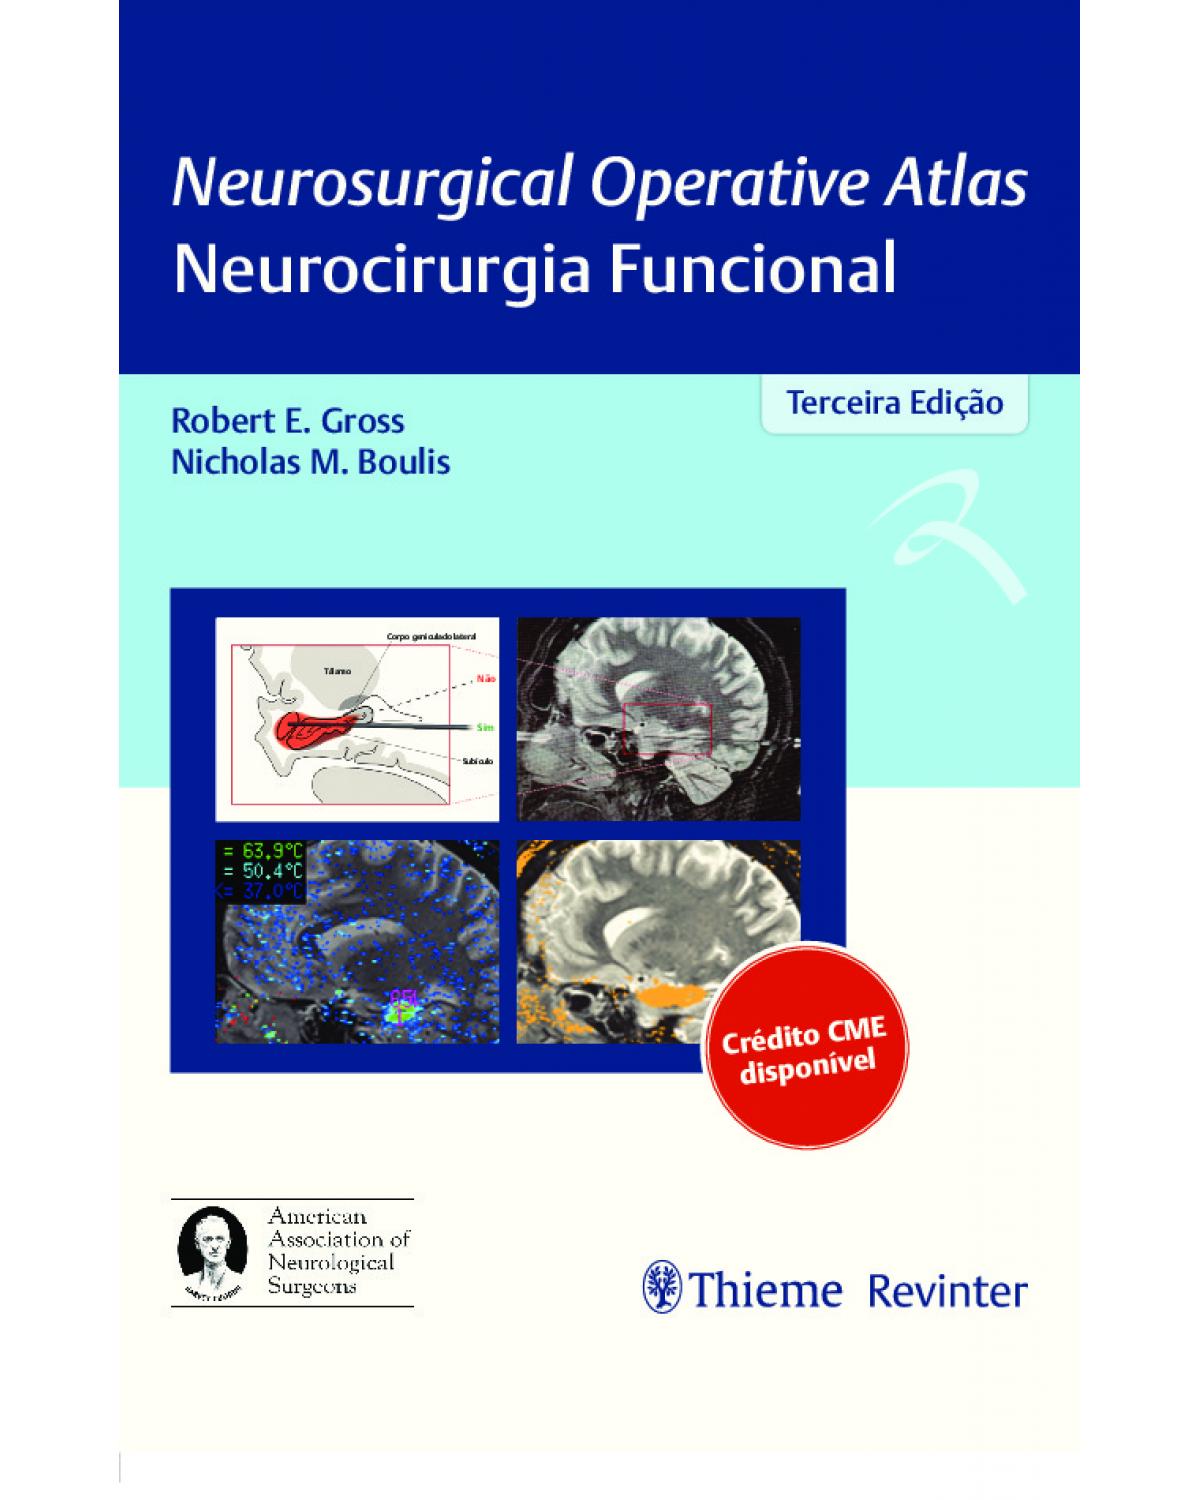 Neurosurgical operative atlas - Neurocirurgia funcional - 3ª Edição | 2020